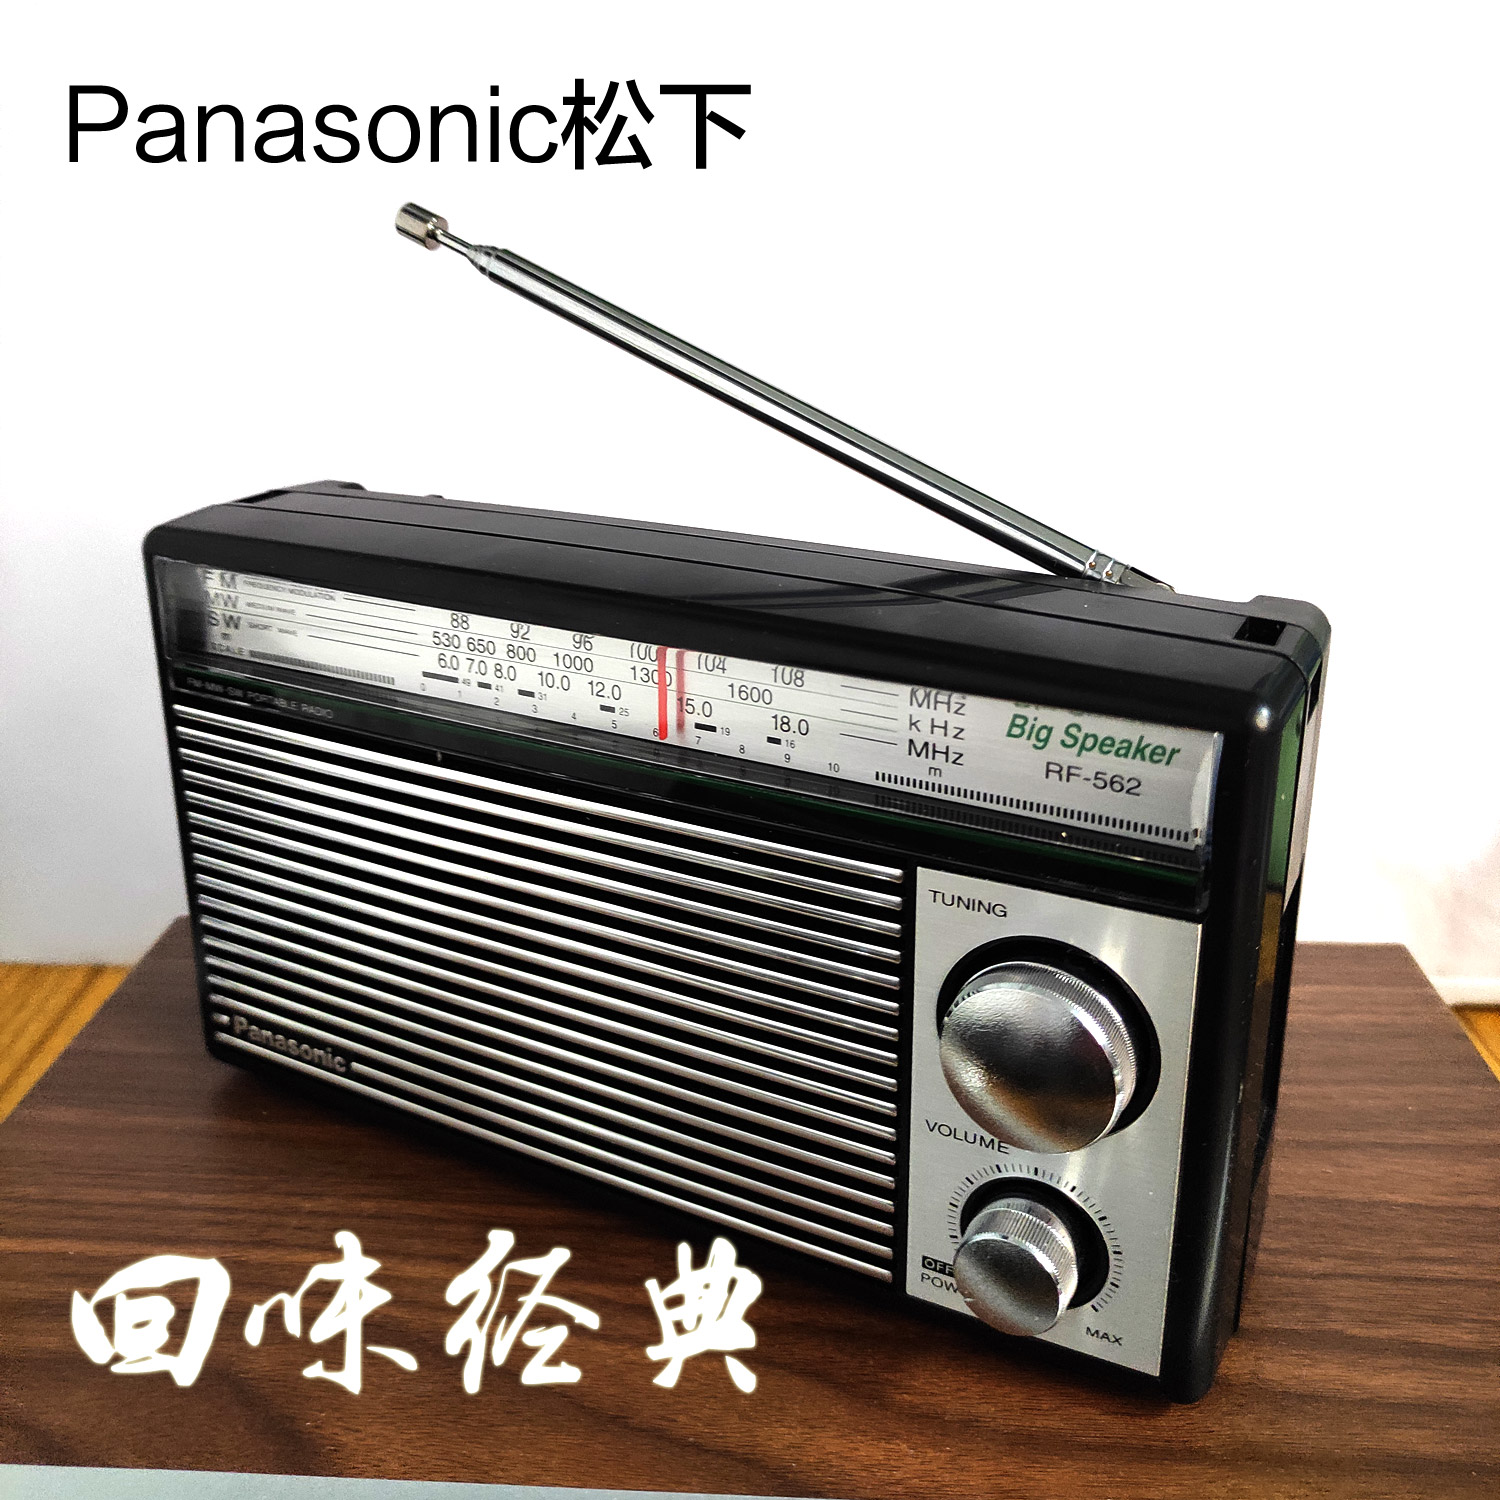 Panasonic松下纪念版经典复古收音机RF-562DD便携式短波调频电池